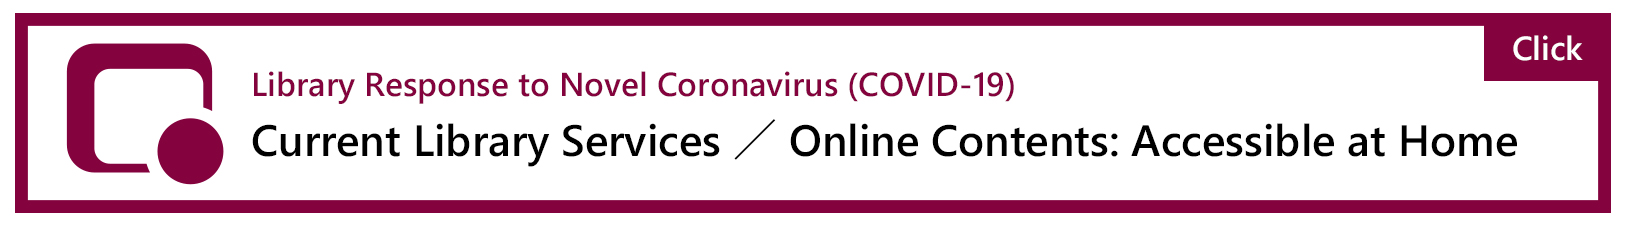 Library Response to Novel Coronavirus (COVID-19)